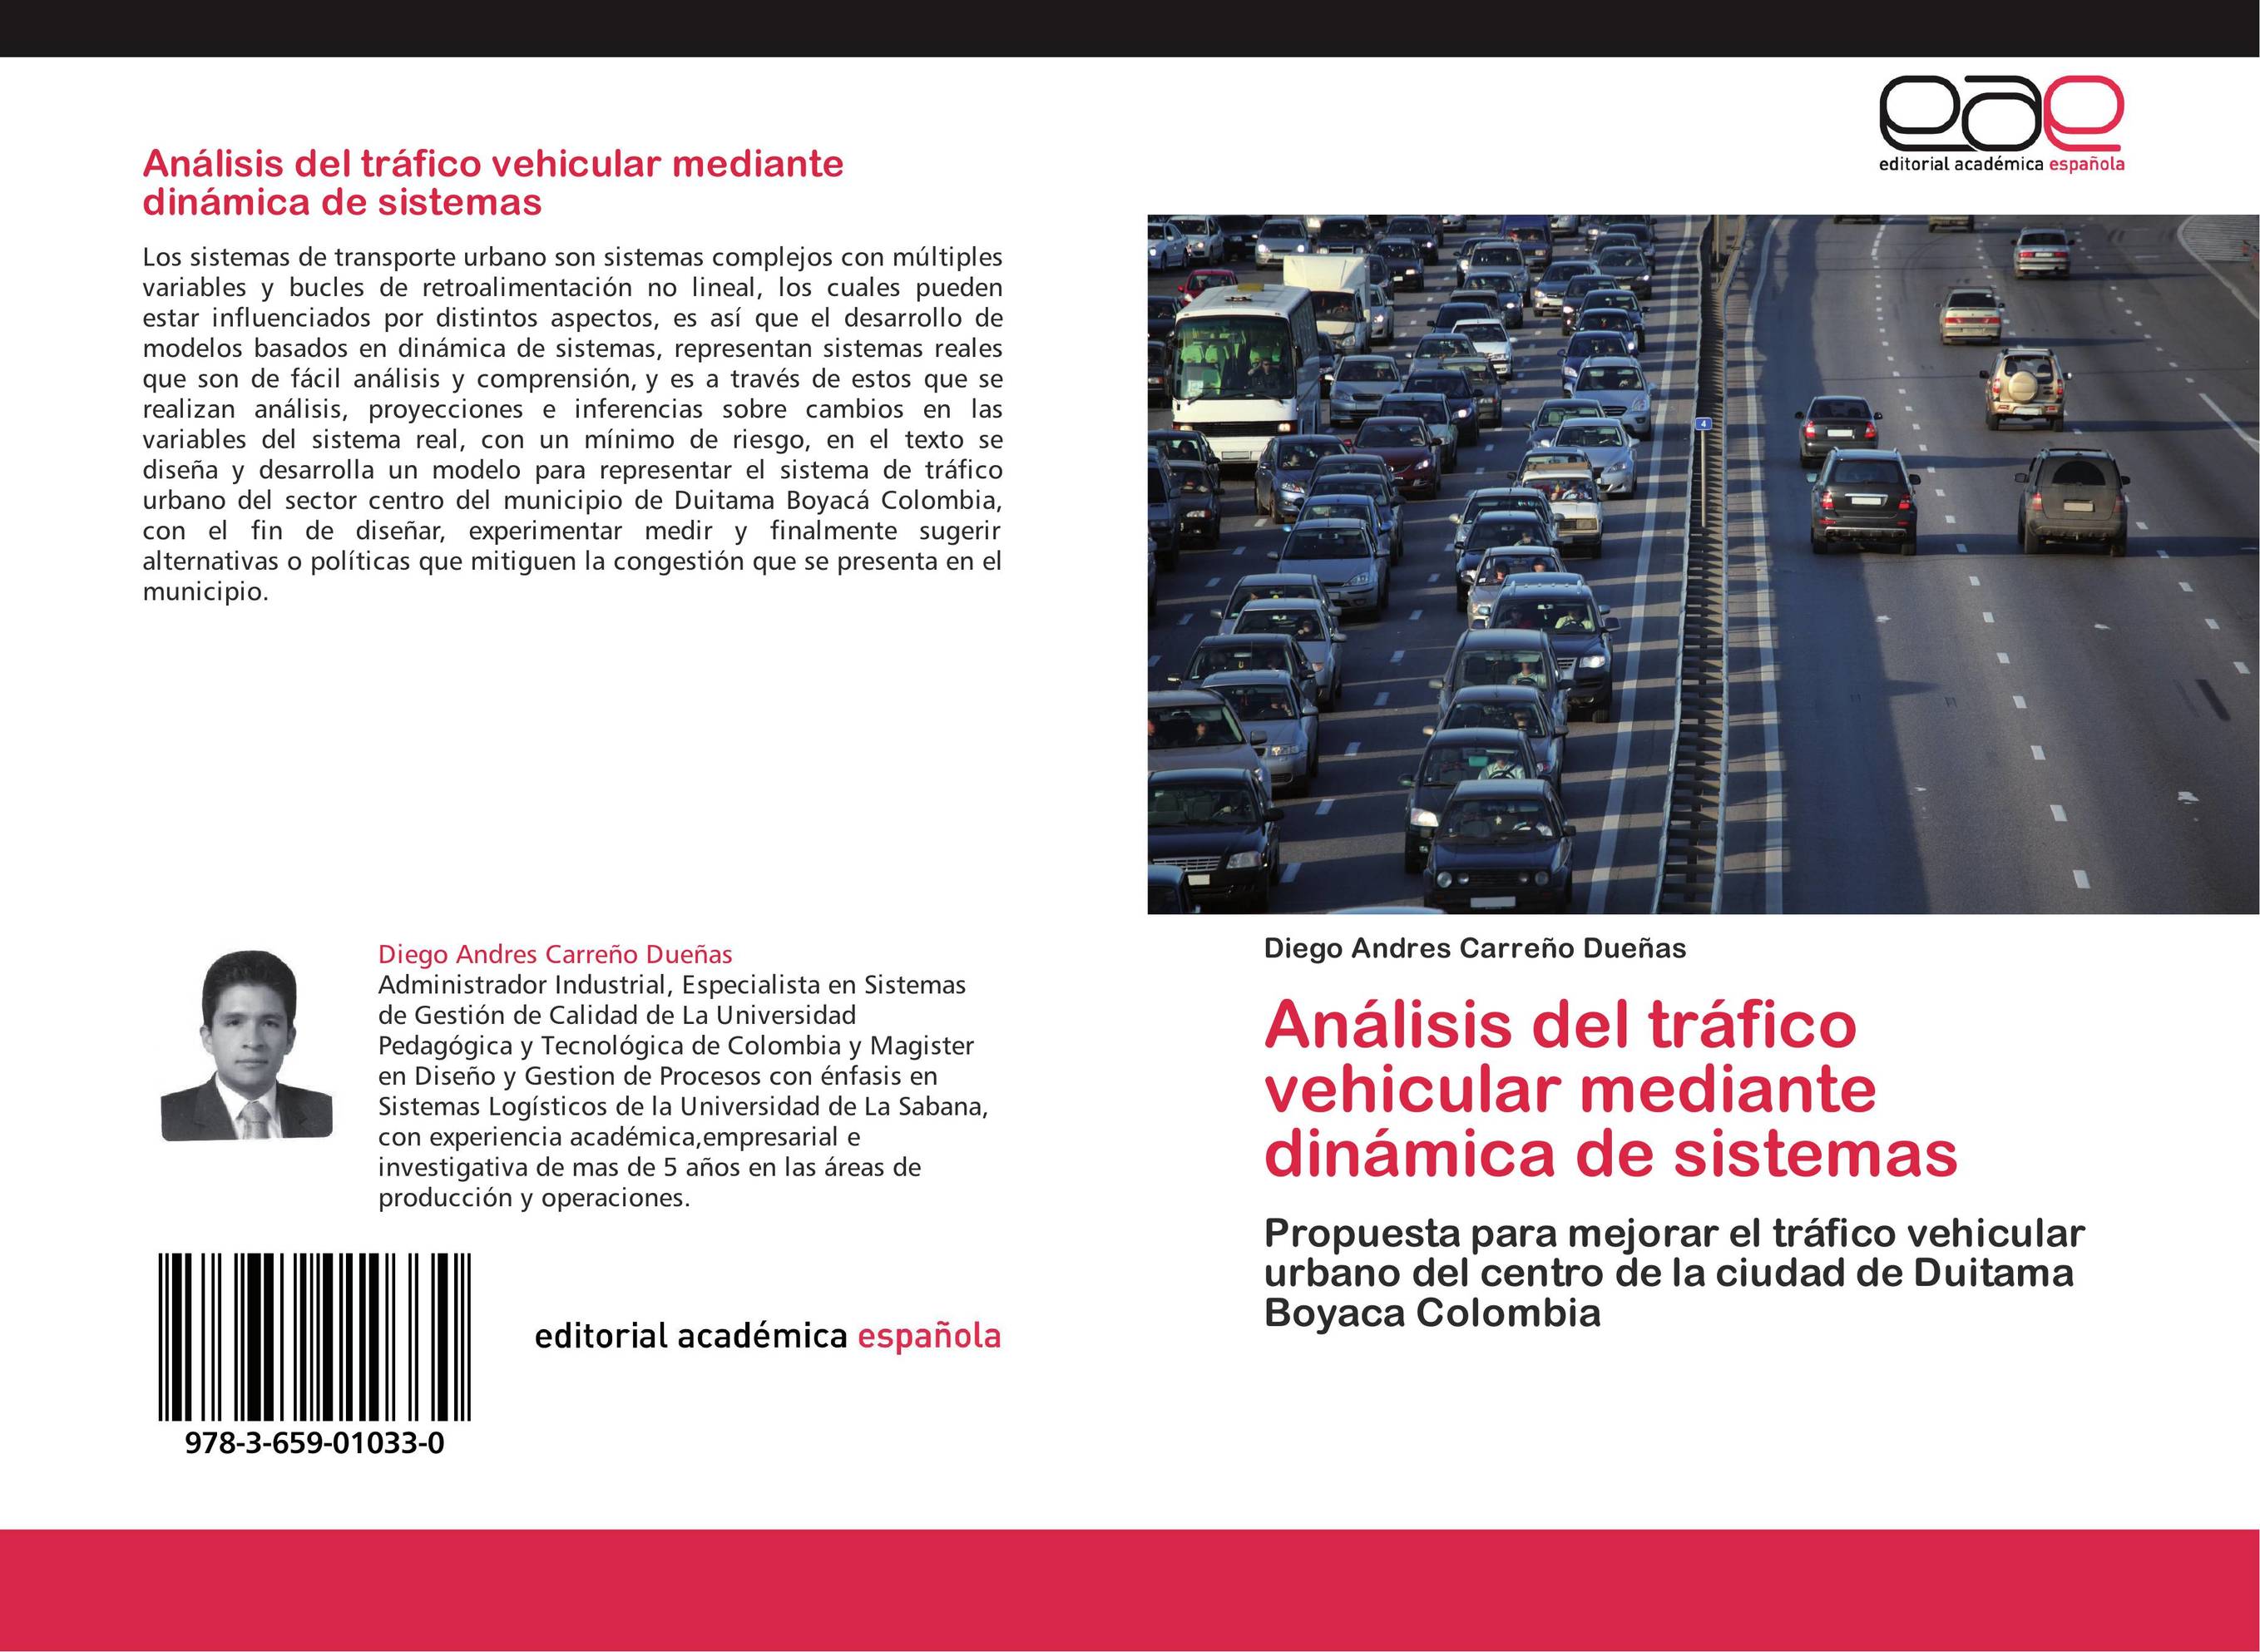 Análisis del tráfico vehicular mediante dinámica de sistemas